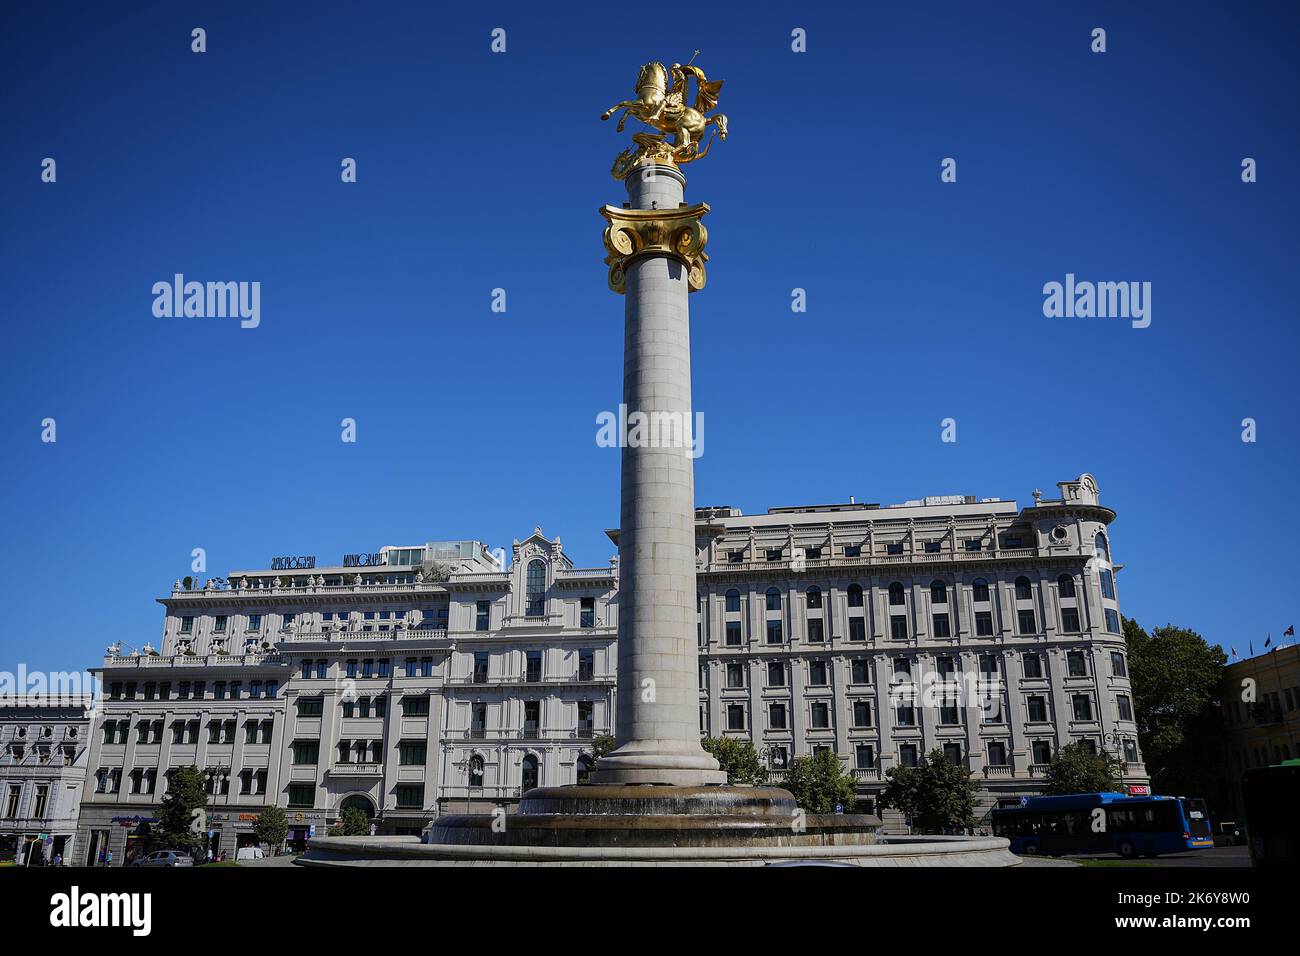 Tawisuplebis Moedani, Freiheitsplatz, Säule mit der Statue von dem heiligen Georg der mit dem Drachen kämpft, Tiflis, Georgien Banque D'Images